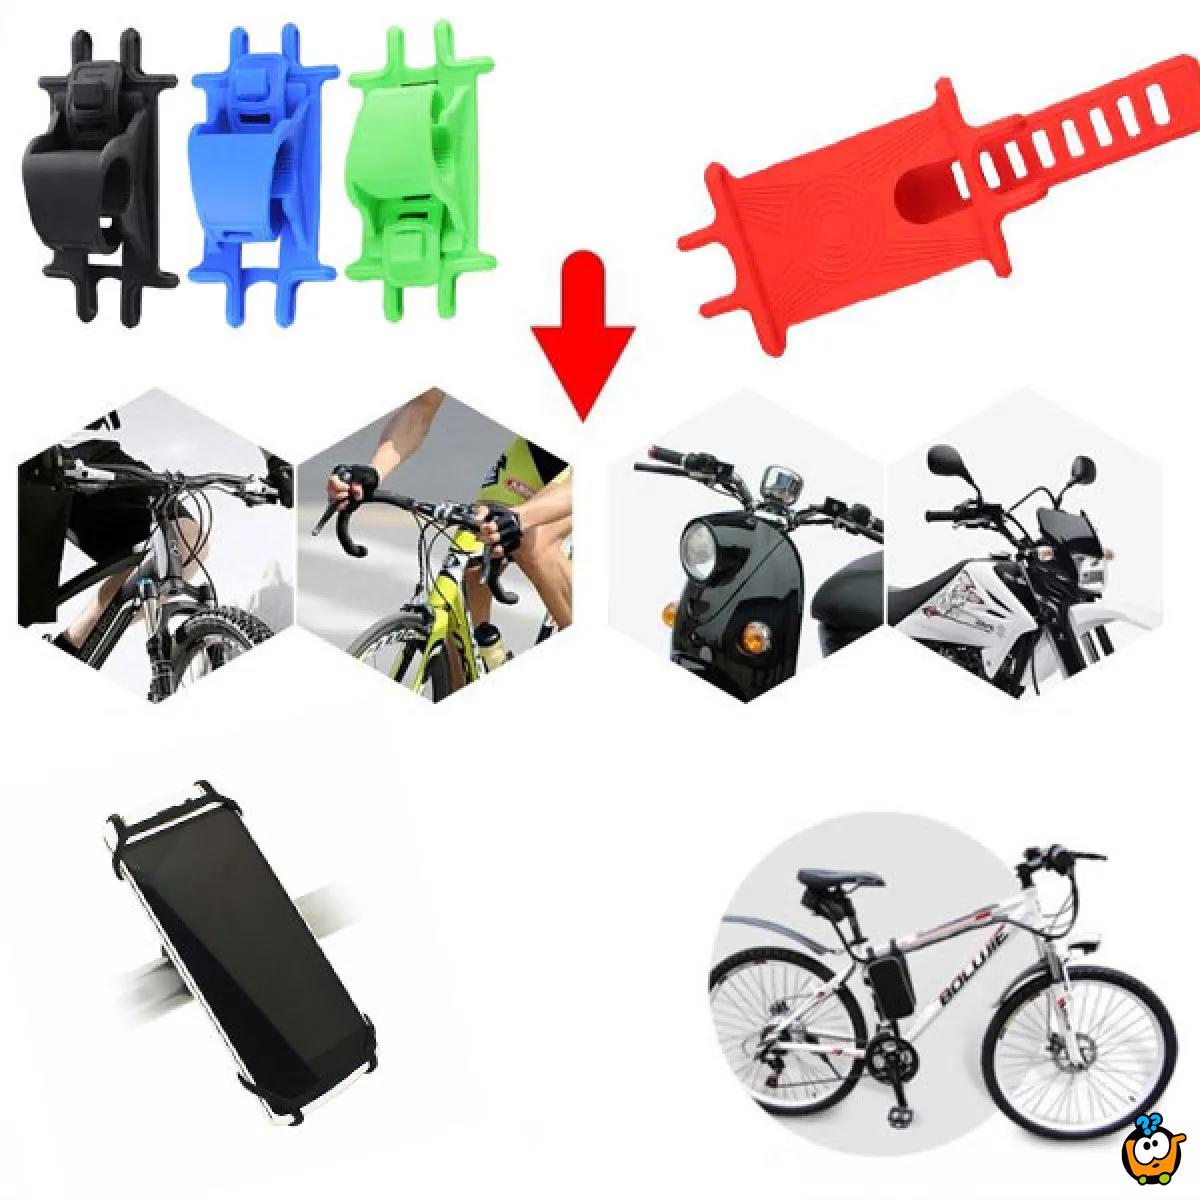 Bike phone holder - Fleksibilni držac telefona za bicikl